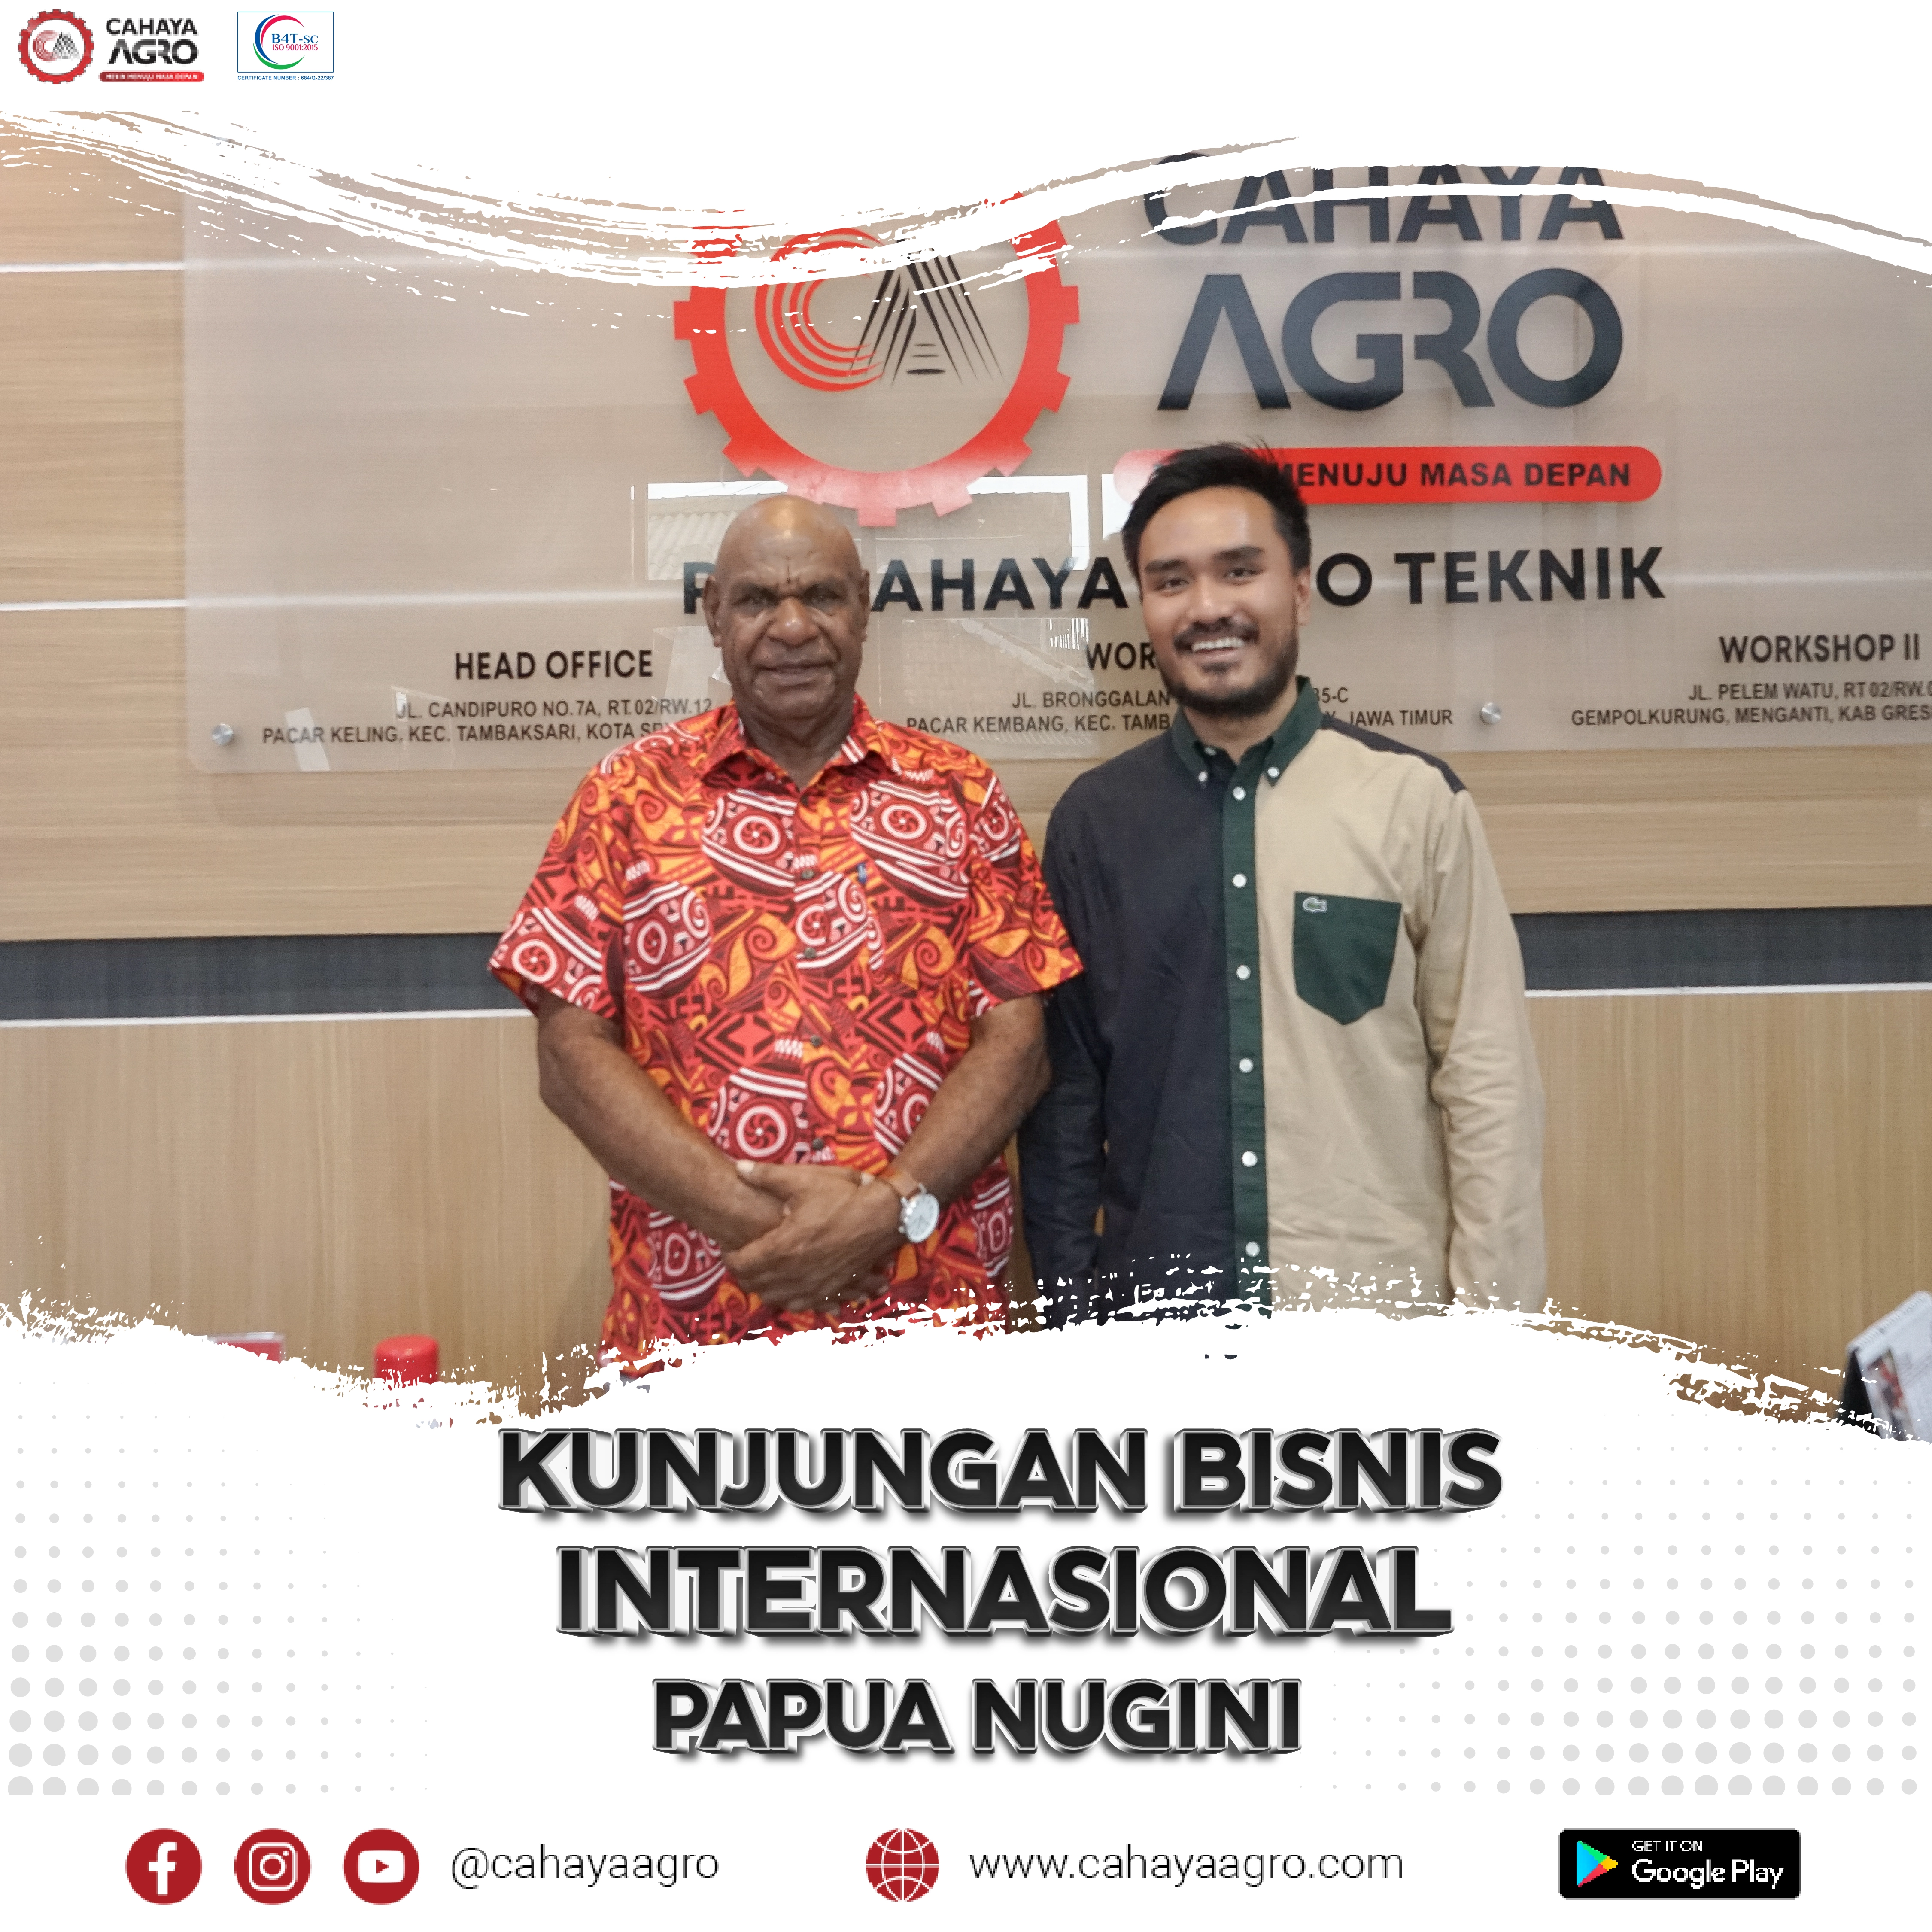 Cahaya Agro menndapat kunjungan bisnis Internasional dari Papua Nugini